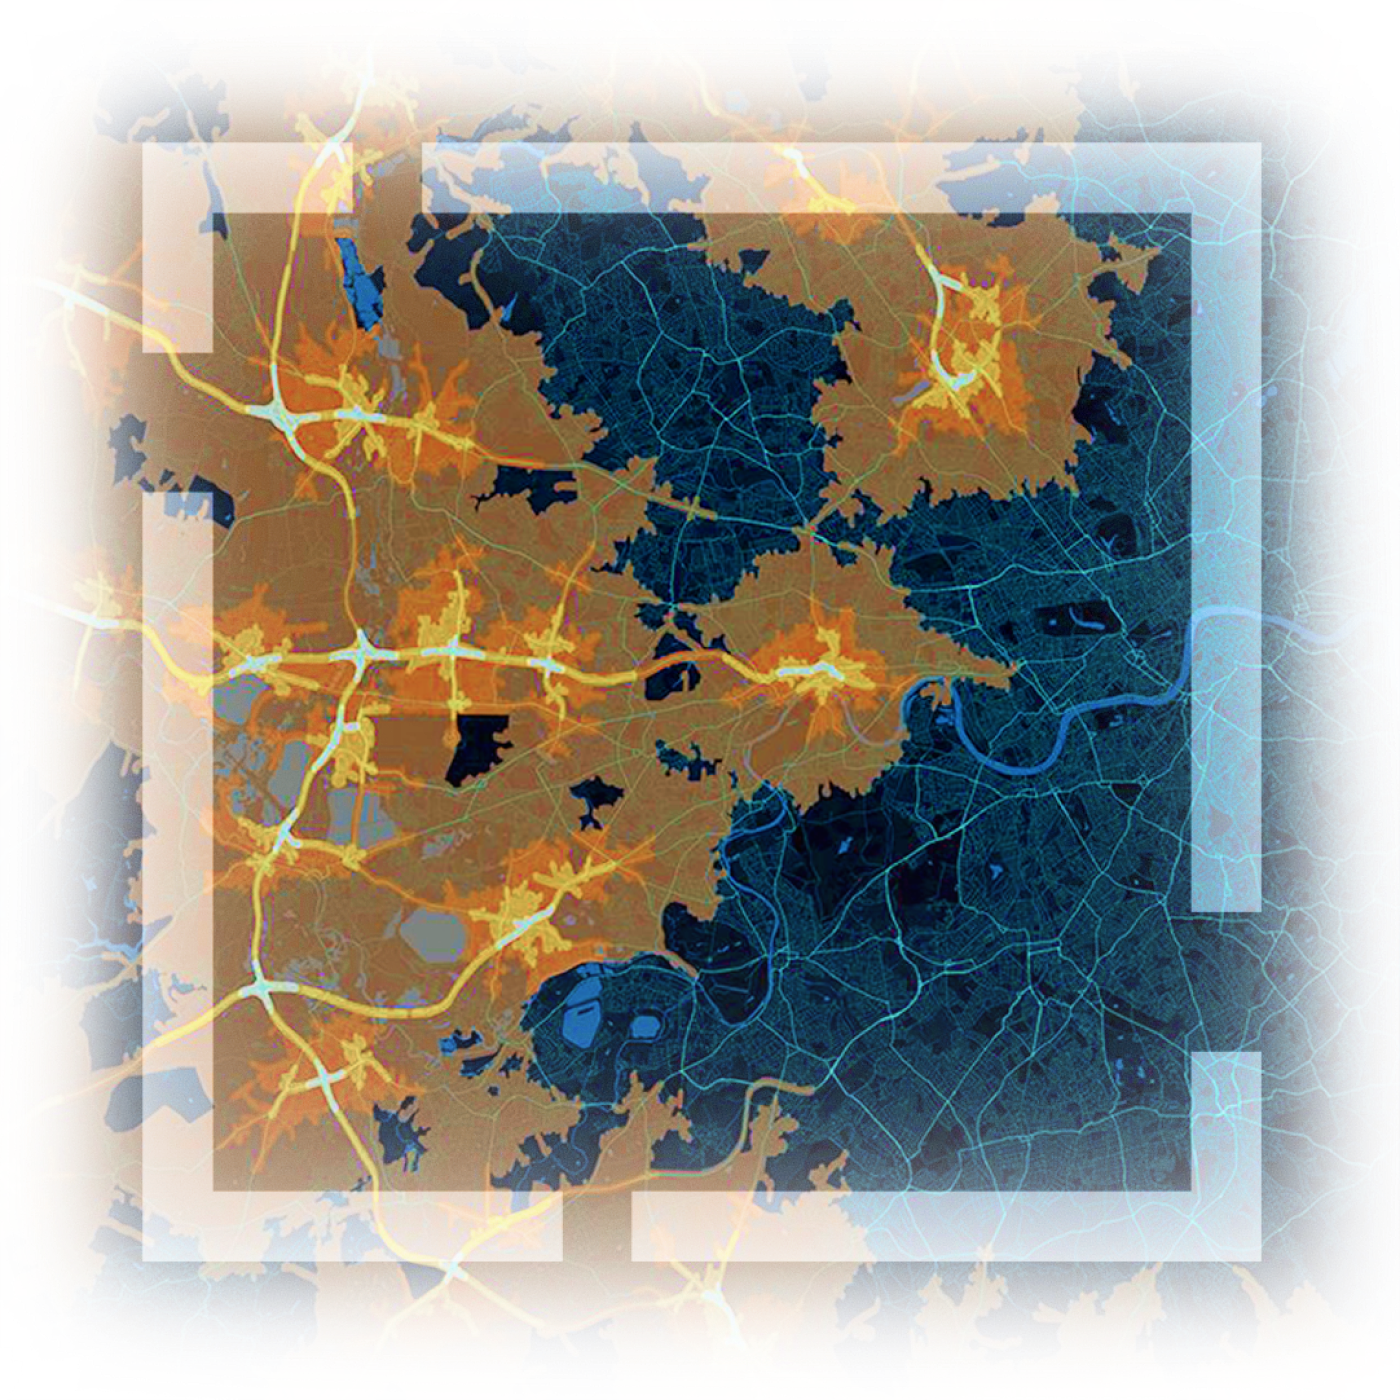 Carte en bleu foncé illustrant des itinéraires de voyage en jaune vif, un carré blanc transparent encadrant la carte